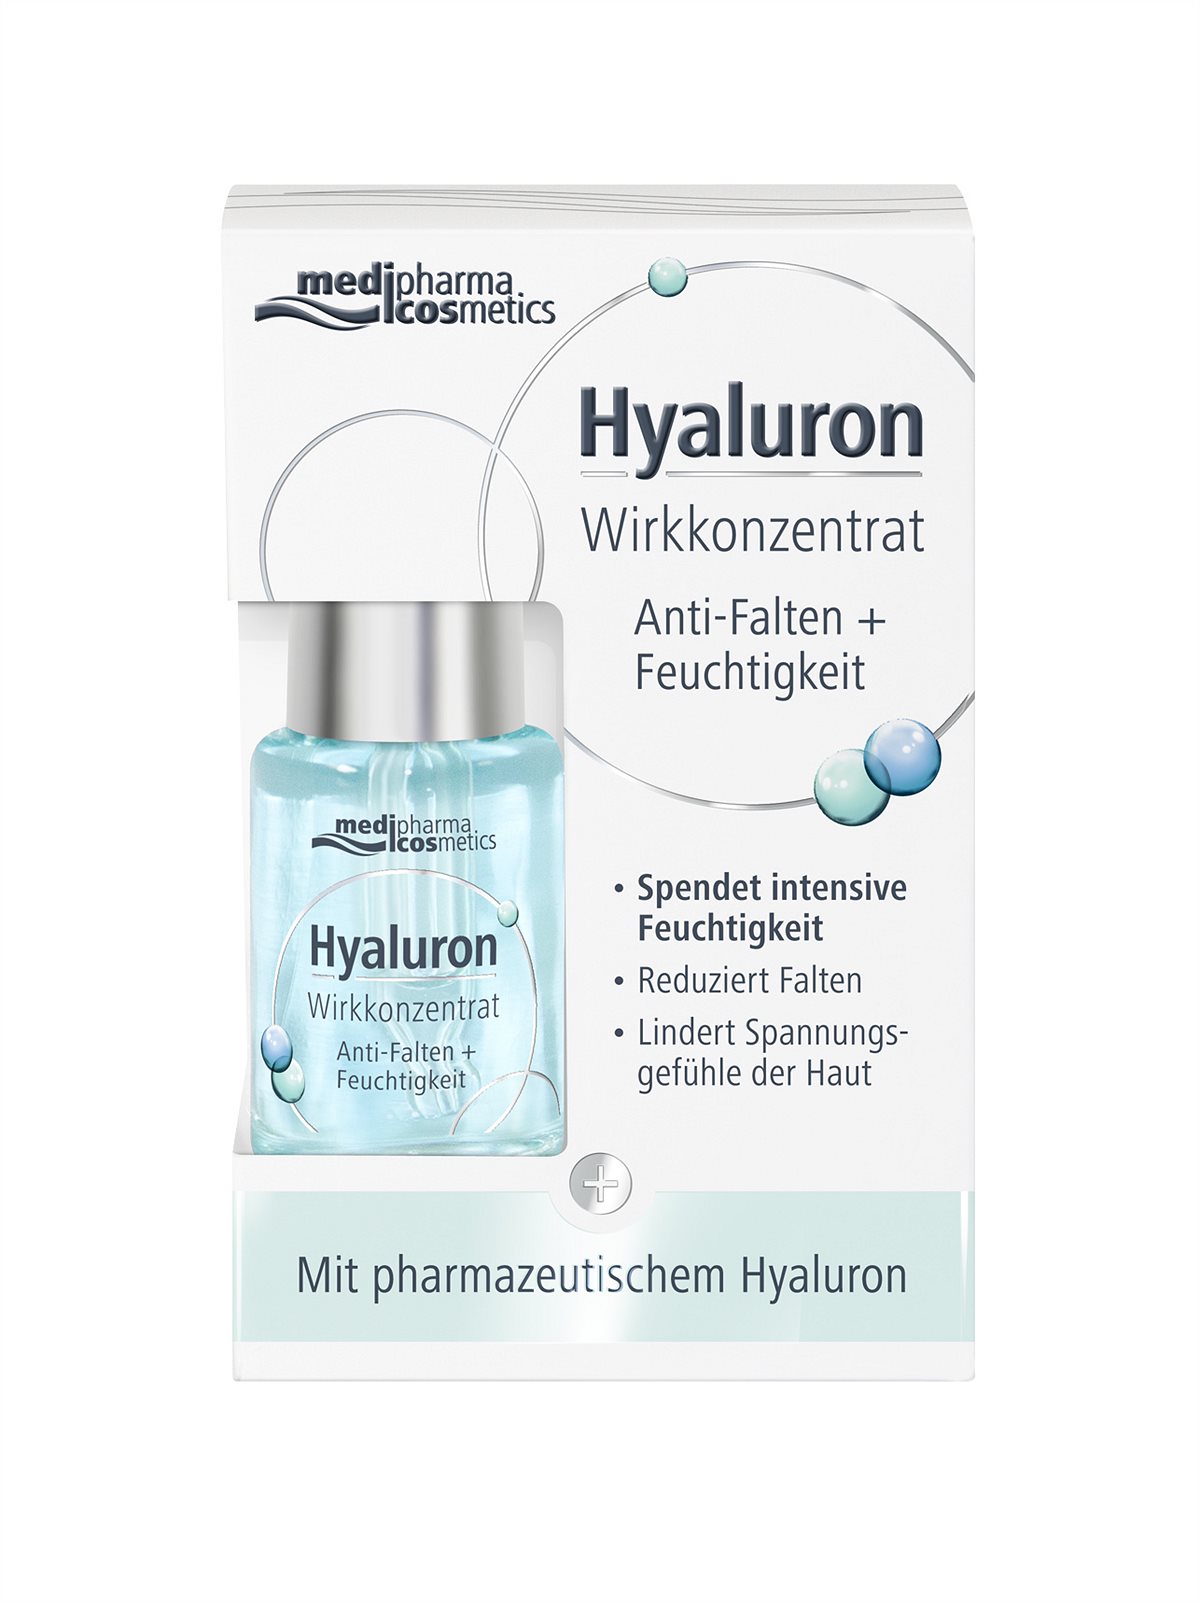 medipharma cosmetics Hyaluron Wirkkonzentrat Anti-Falten + Feuchtigkeit Box